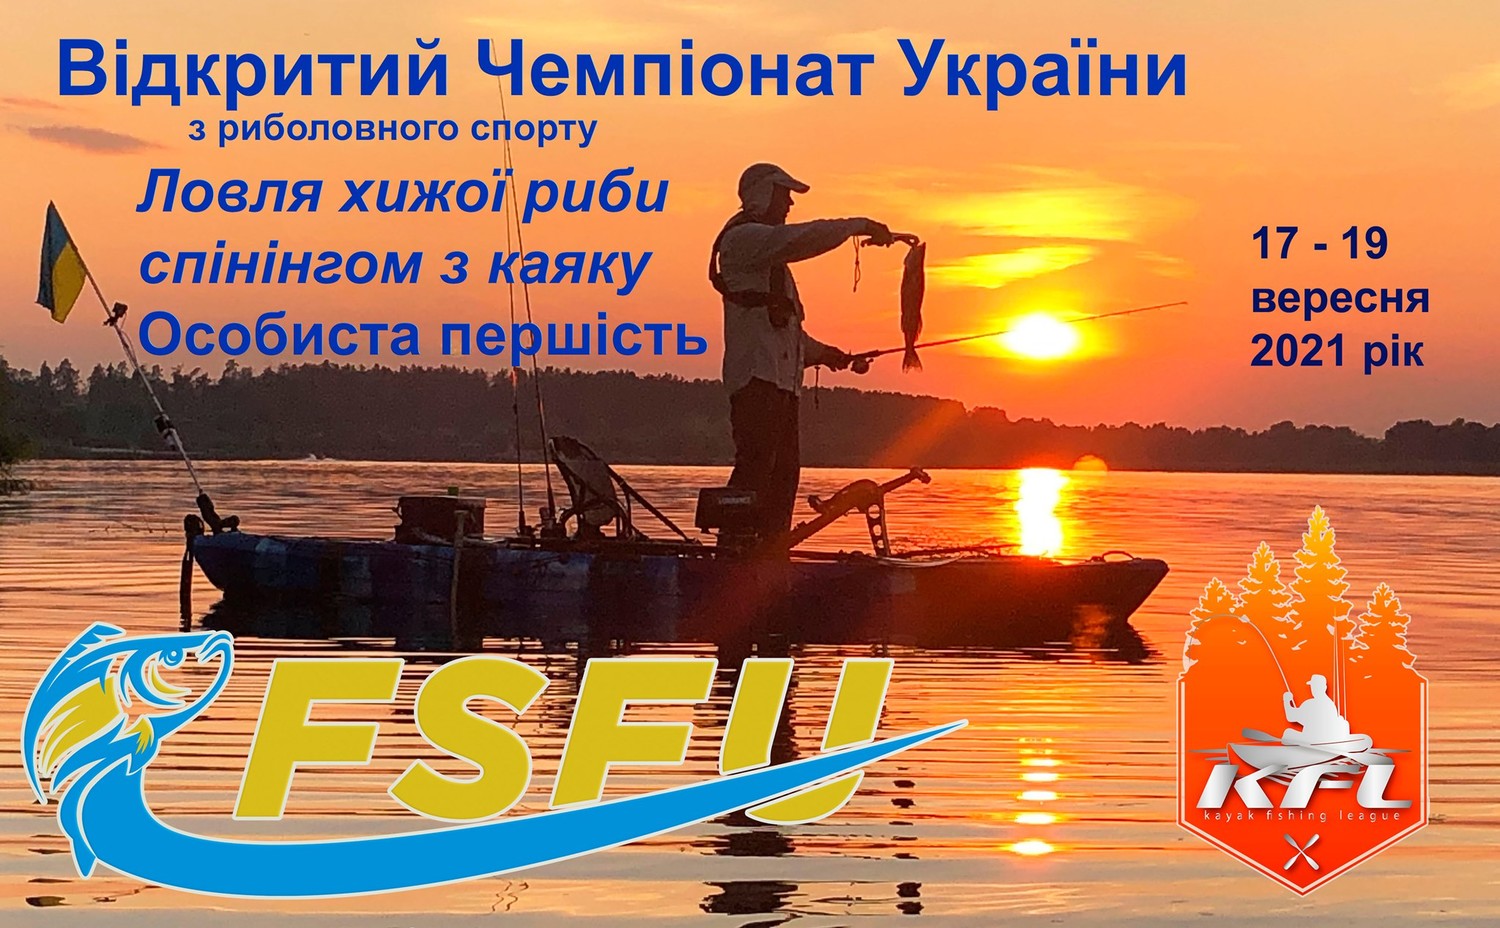 Fish Sport - Відкритий Чемпіонат України з ловлі хижої риби спінінгом з каяку